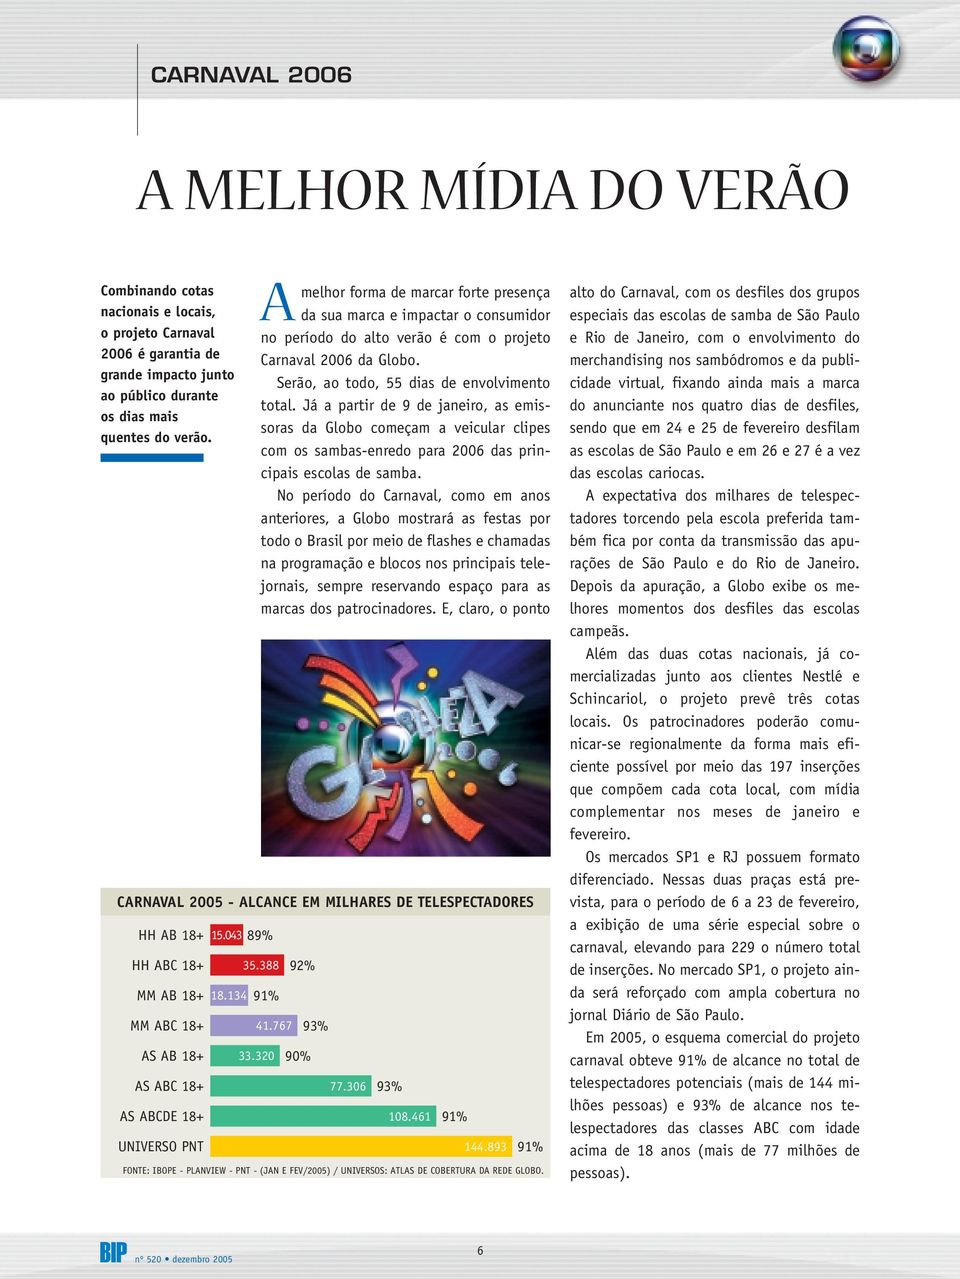 Já a partir de 9 de janeiro, as emissoras da Globo começam a veicular clipes com os sambas-enredo para 2006 das principais escolas de samba.